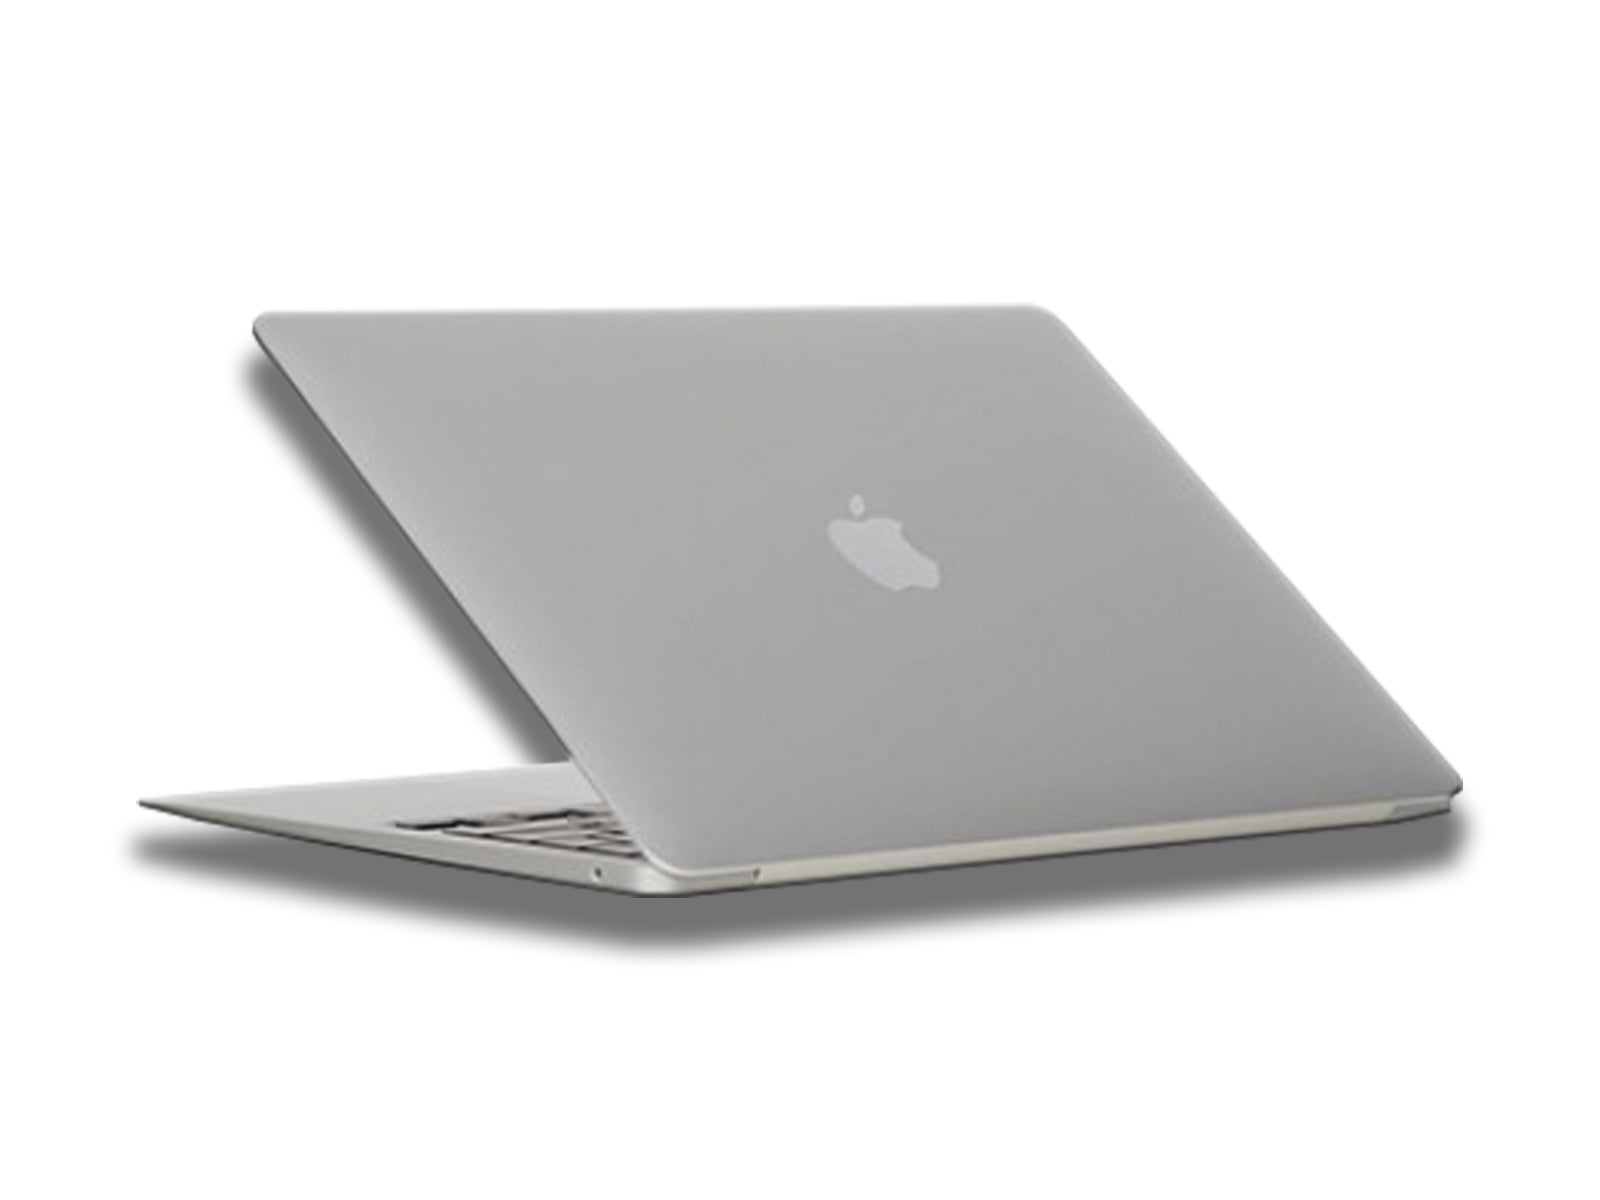 Apple MacBook Air 2020 In Silver Back